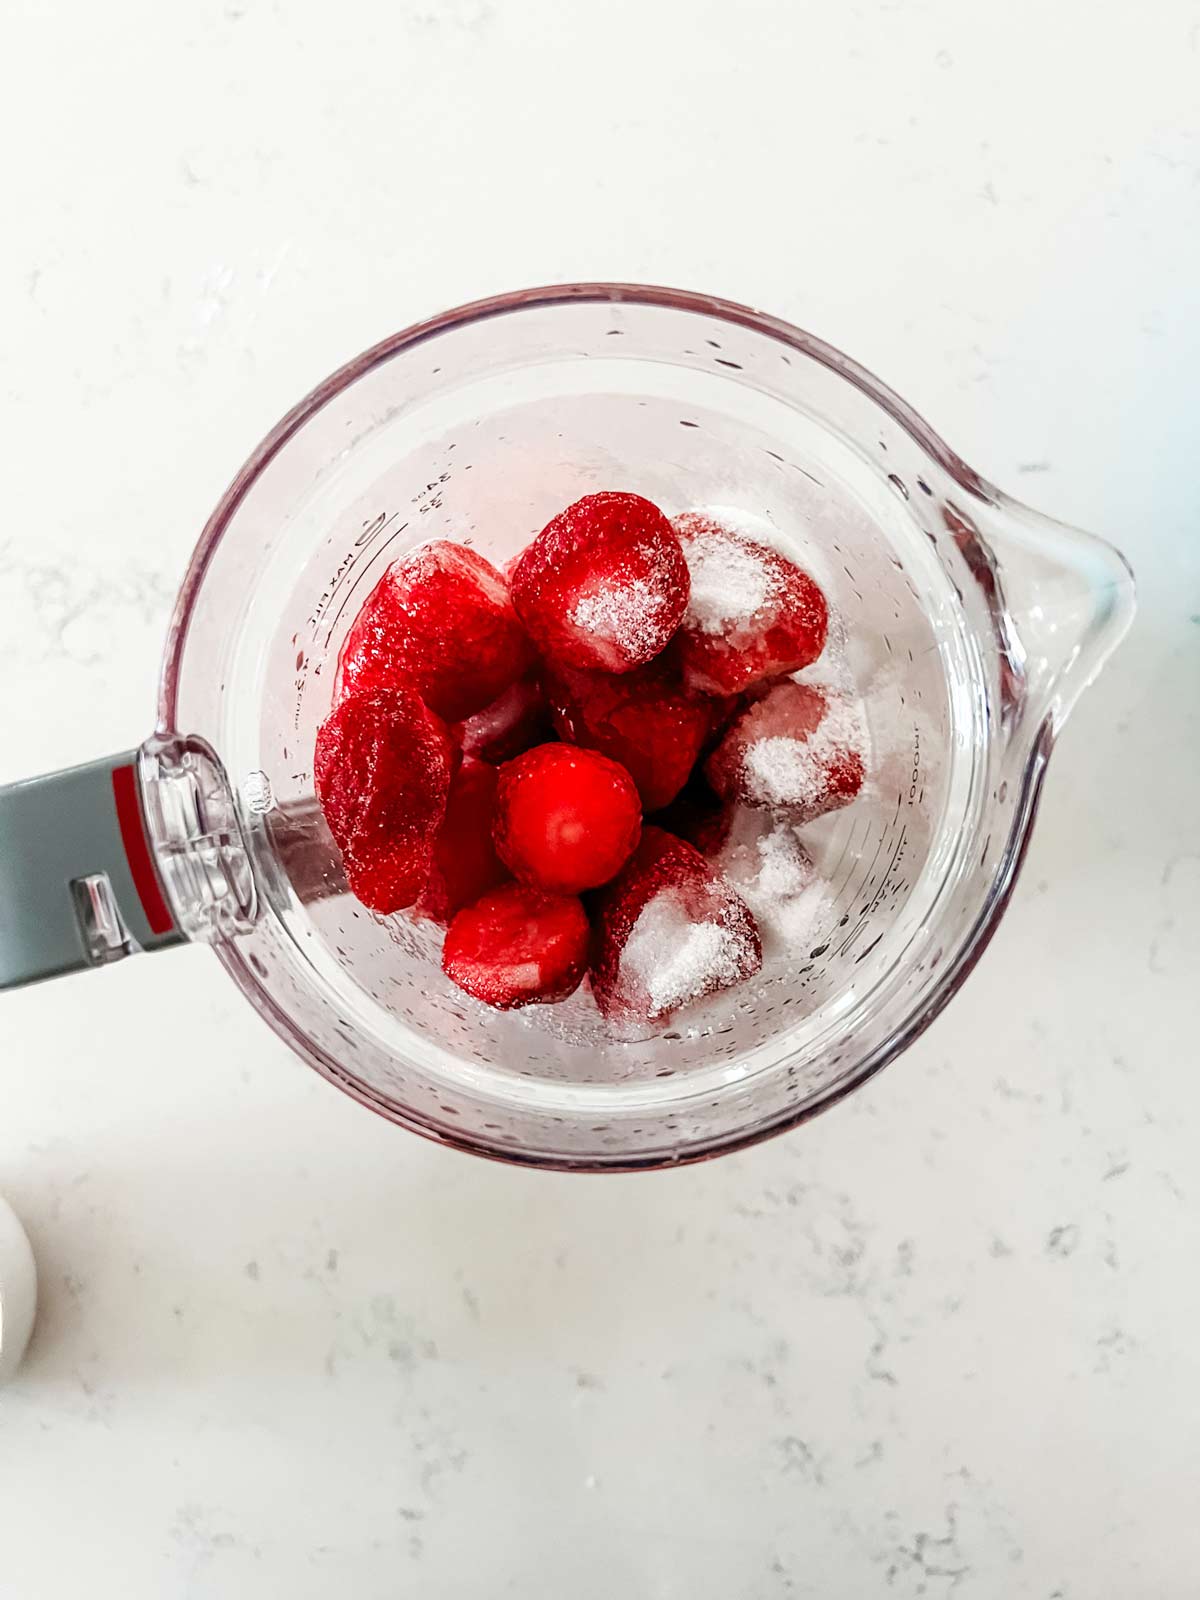 Strawberries, lemon juice and sugar in a blender.